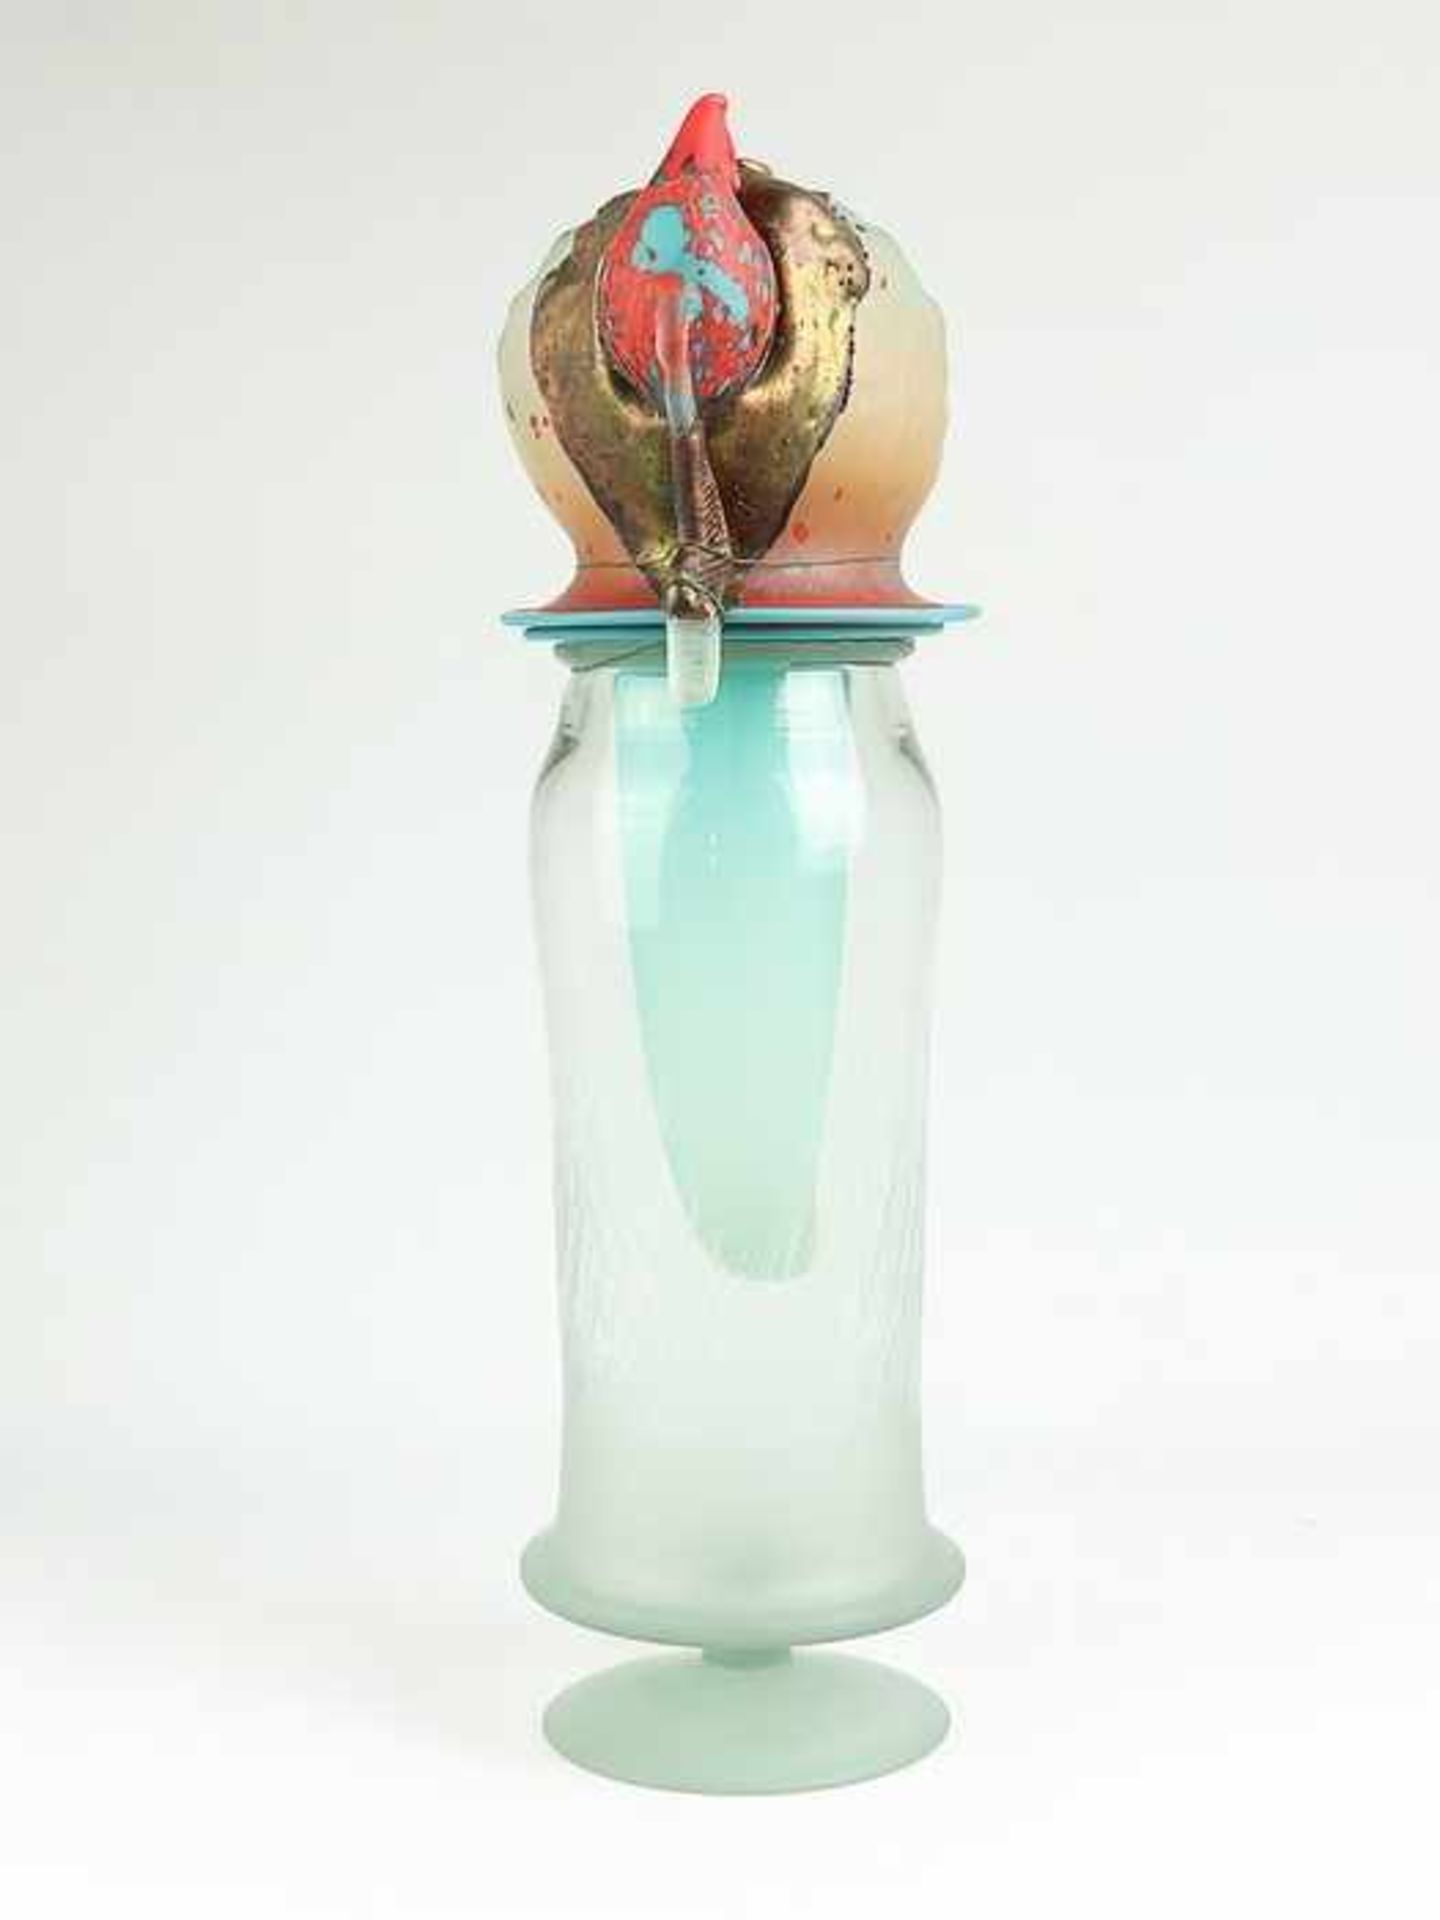 Künstlerobjektwohl russischer Künstler, farbloses, polychromes u. opakes Glas, runder Stand, - Bild 2 aus 3